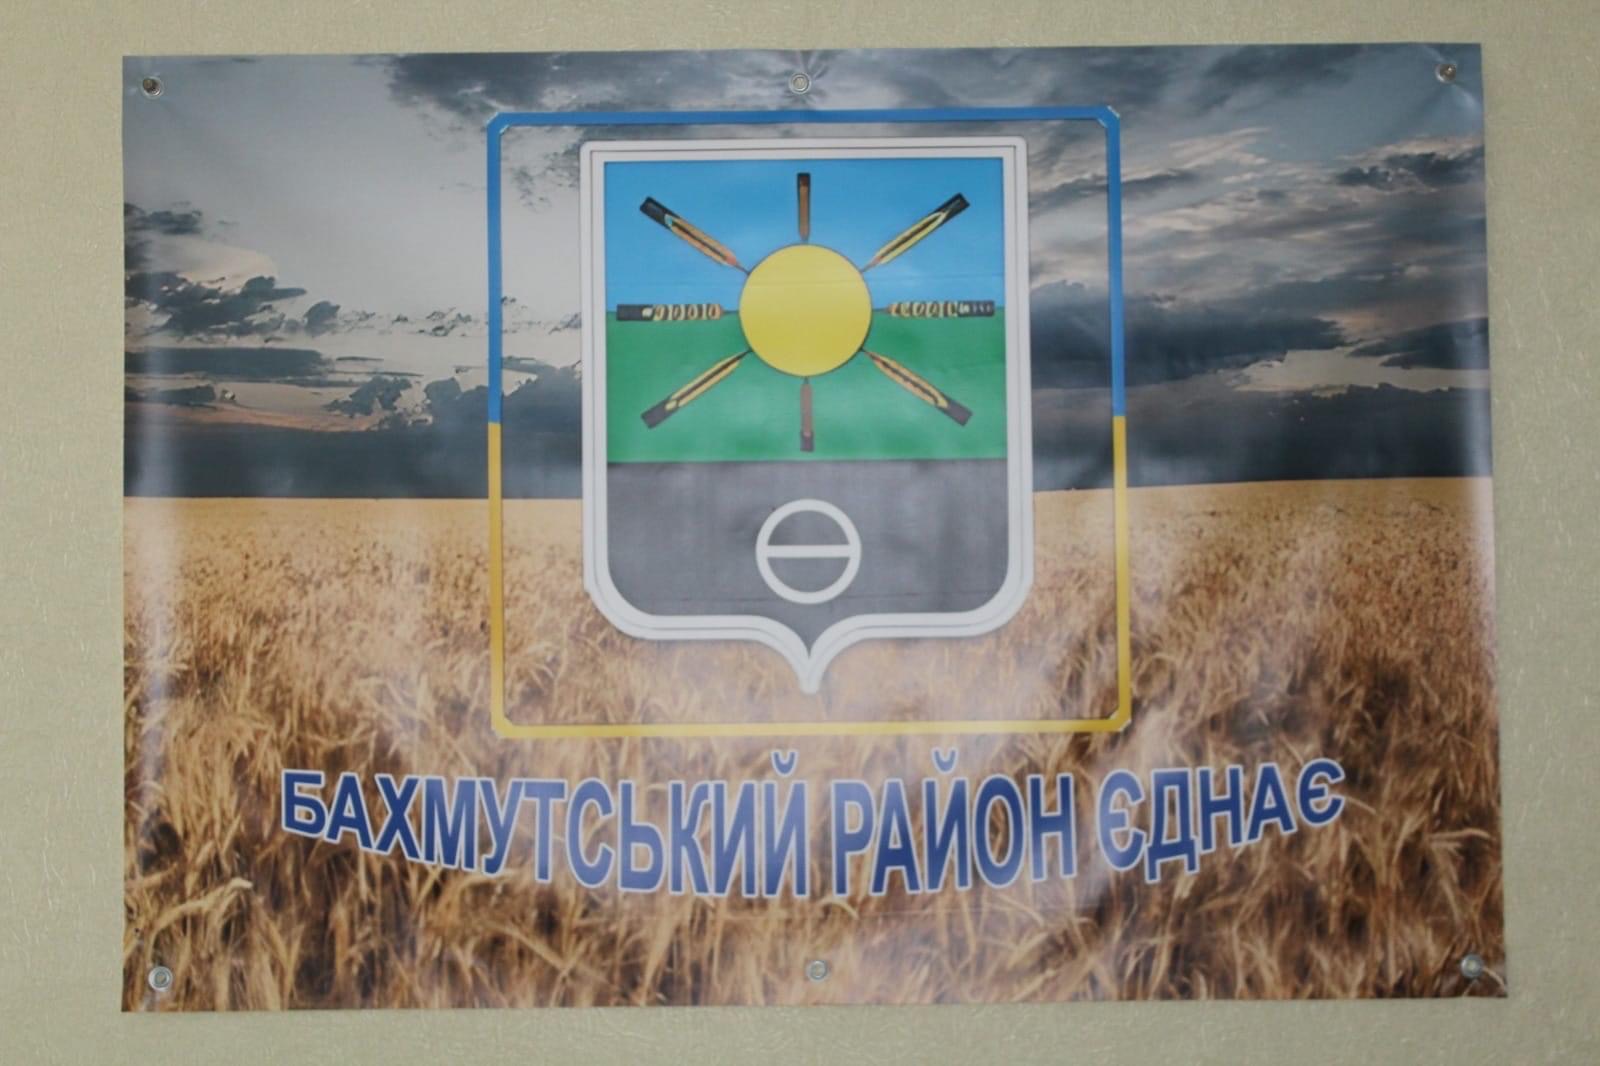 Хаб для переселенцев Бахмутского района появился в Киеве: куда обращаться (адрес) 2